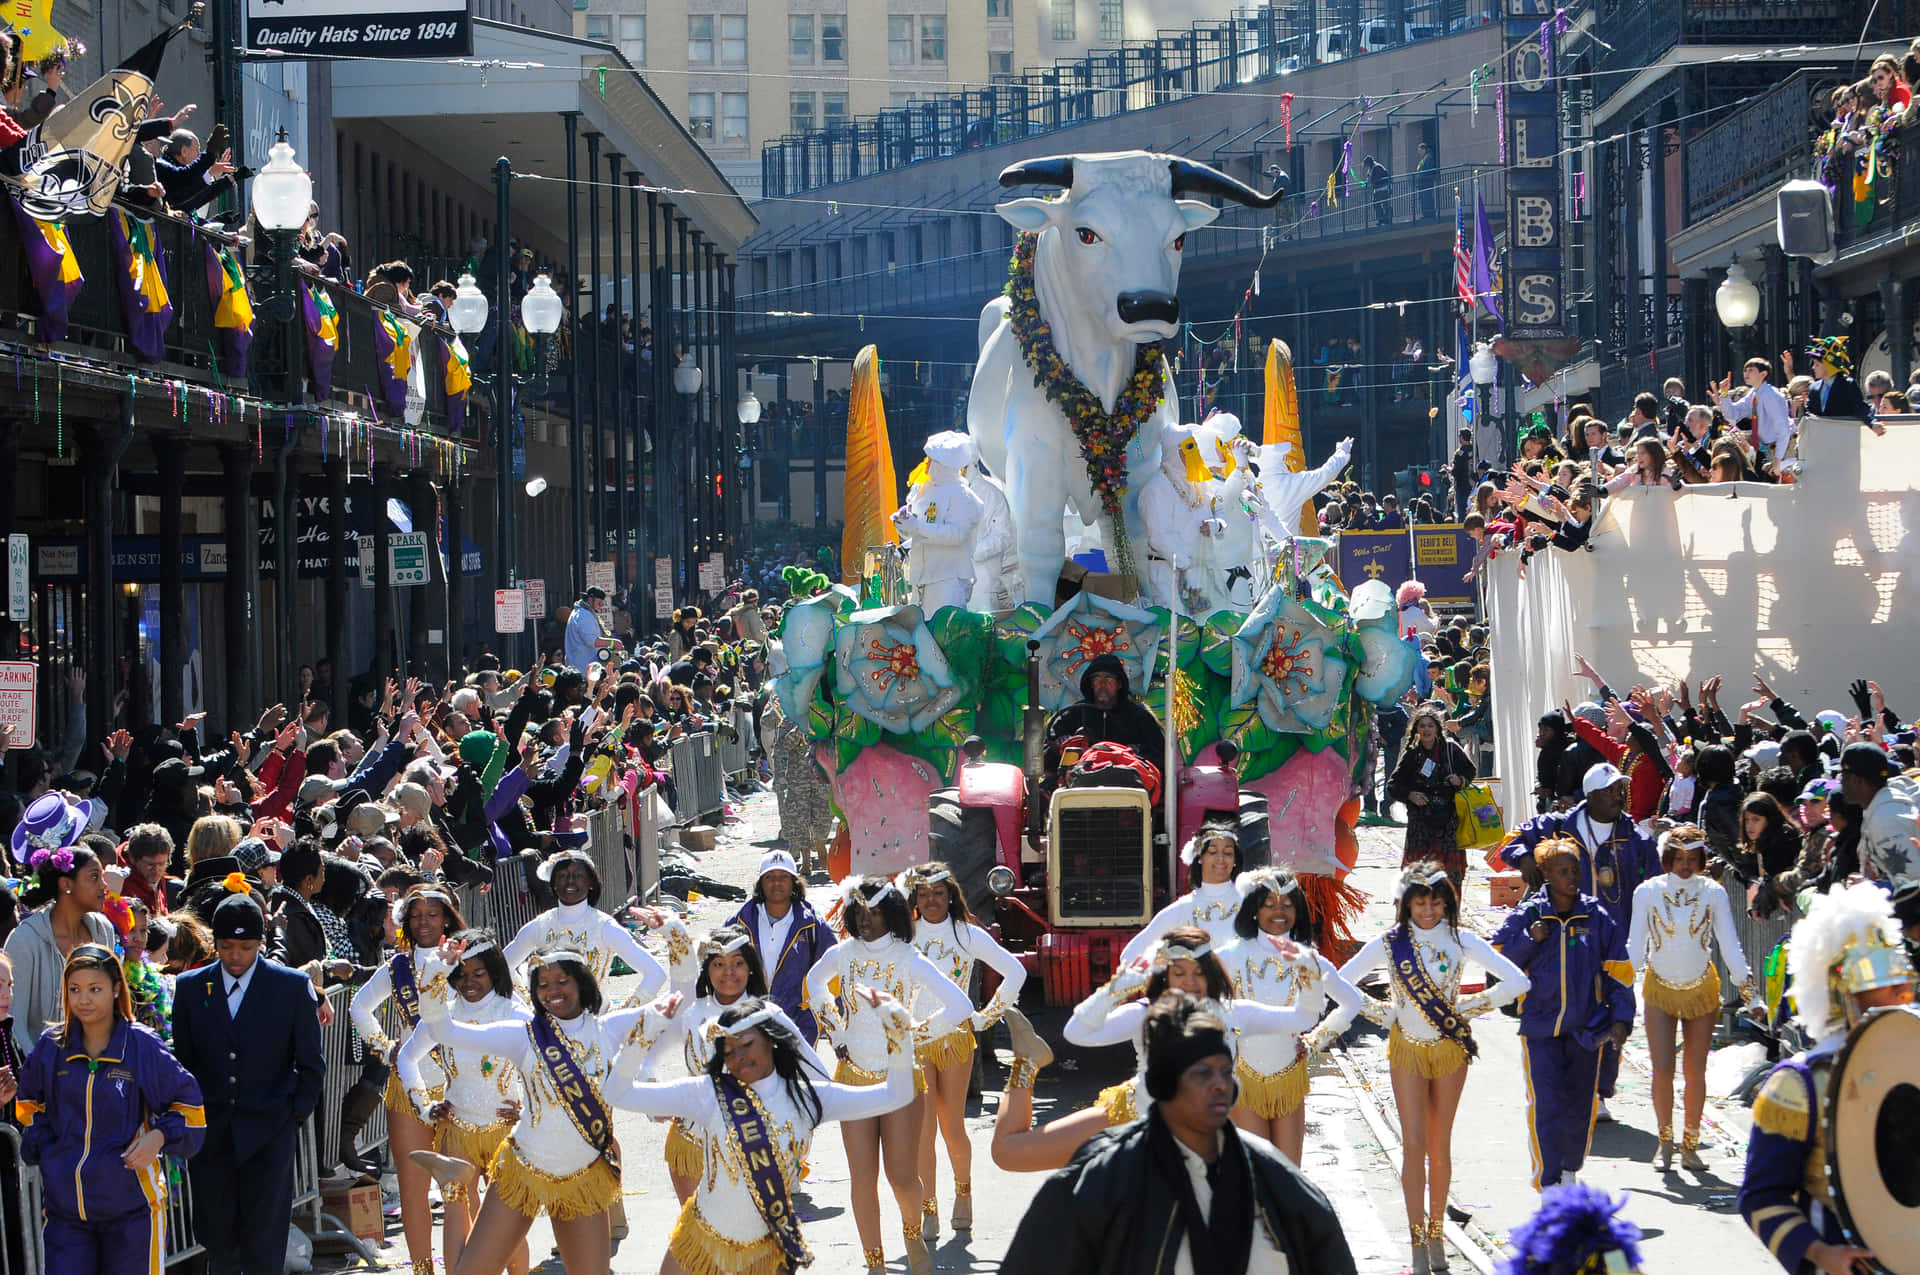 Feiernsie Mardi Gras Stilvoll Mit Traditionellen Dekorationen Und Bunten Perlen!